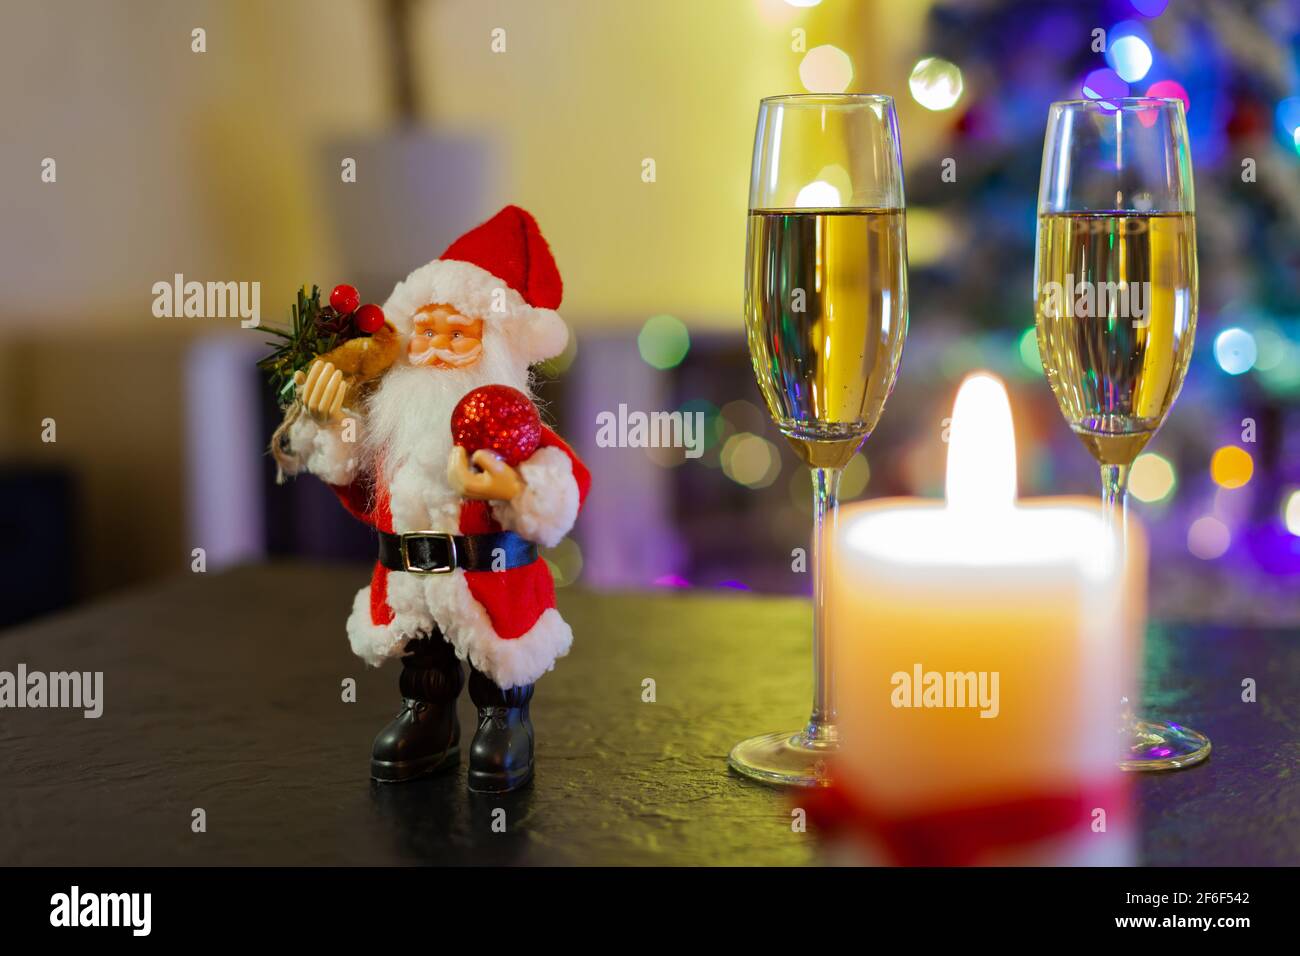 Le Père Noël et deux verres de champagne sur fond De lumières d'arbre de Noël Banque D'Images